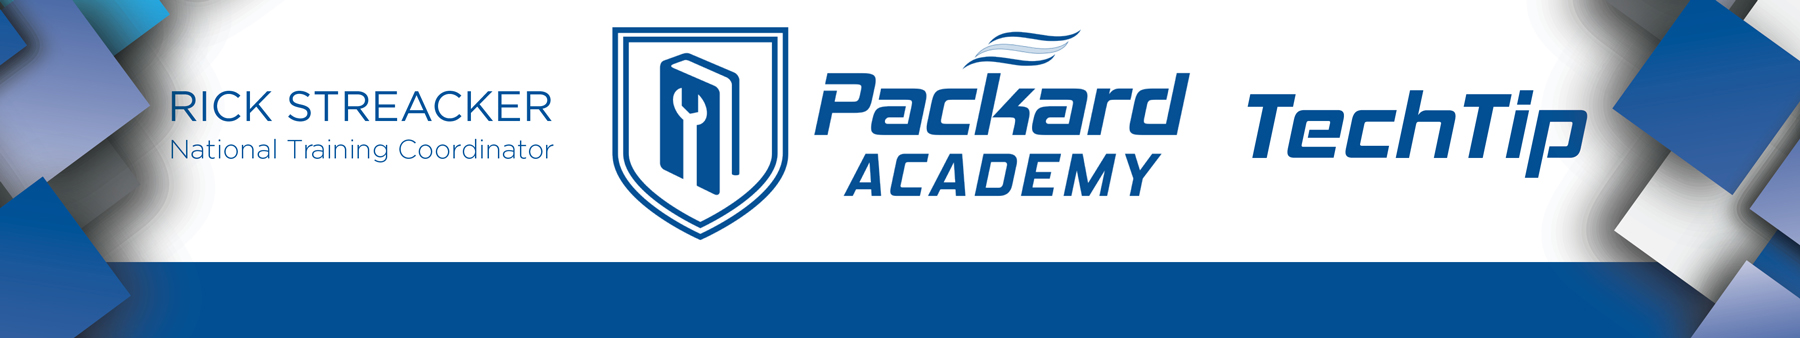 Packard-Academy-TechTip-Header